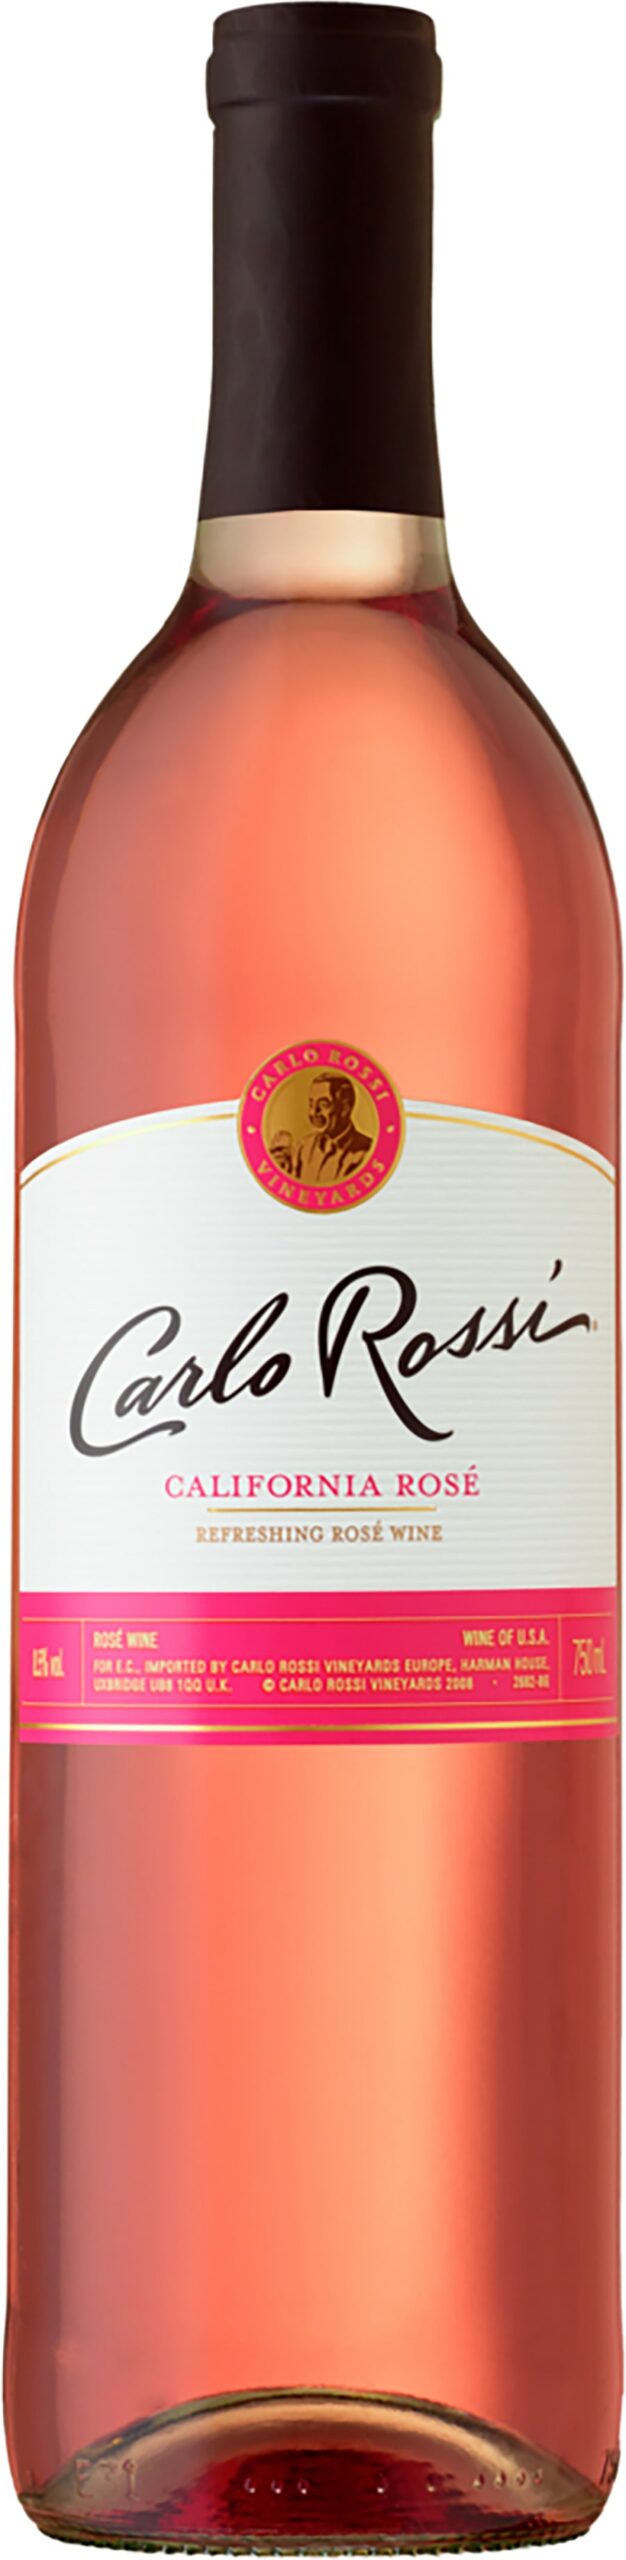 california rose wine